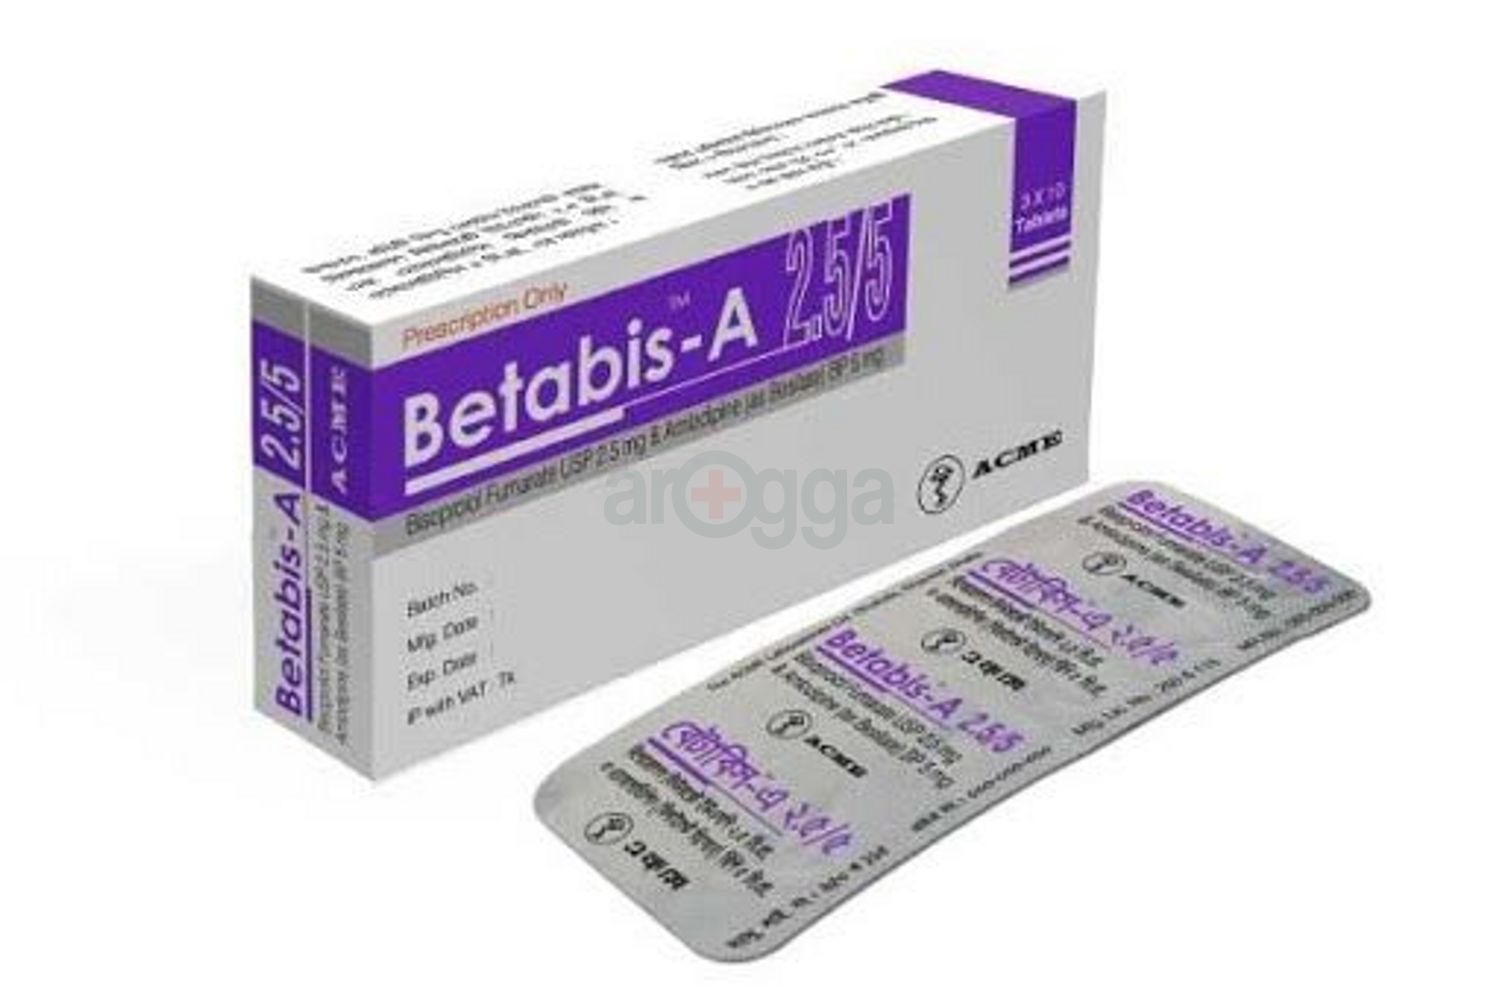 Betabis-A 2.5/5